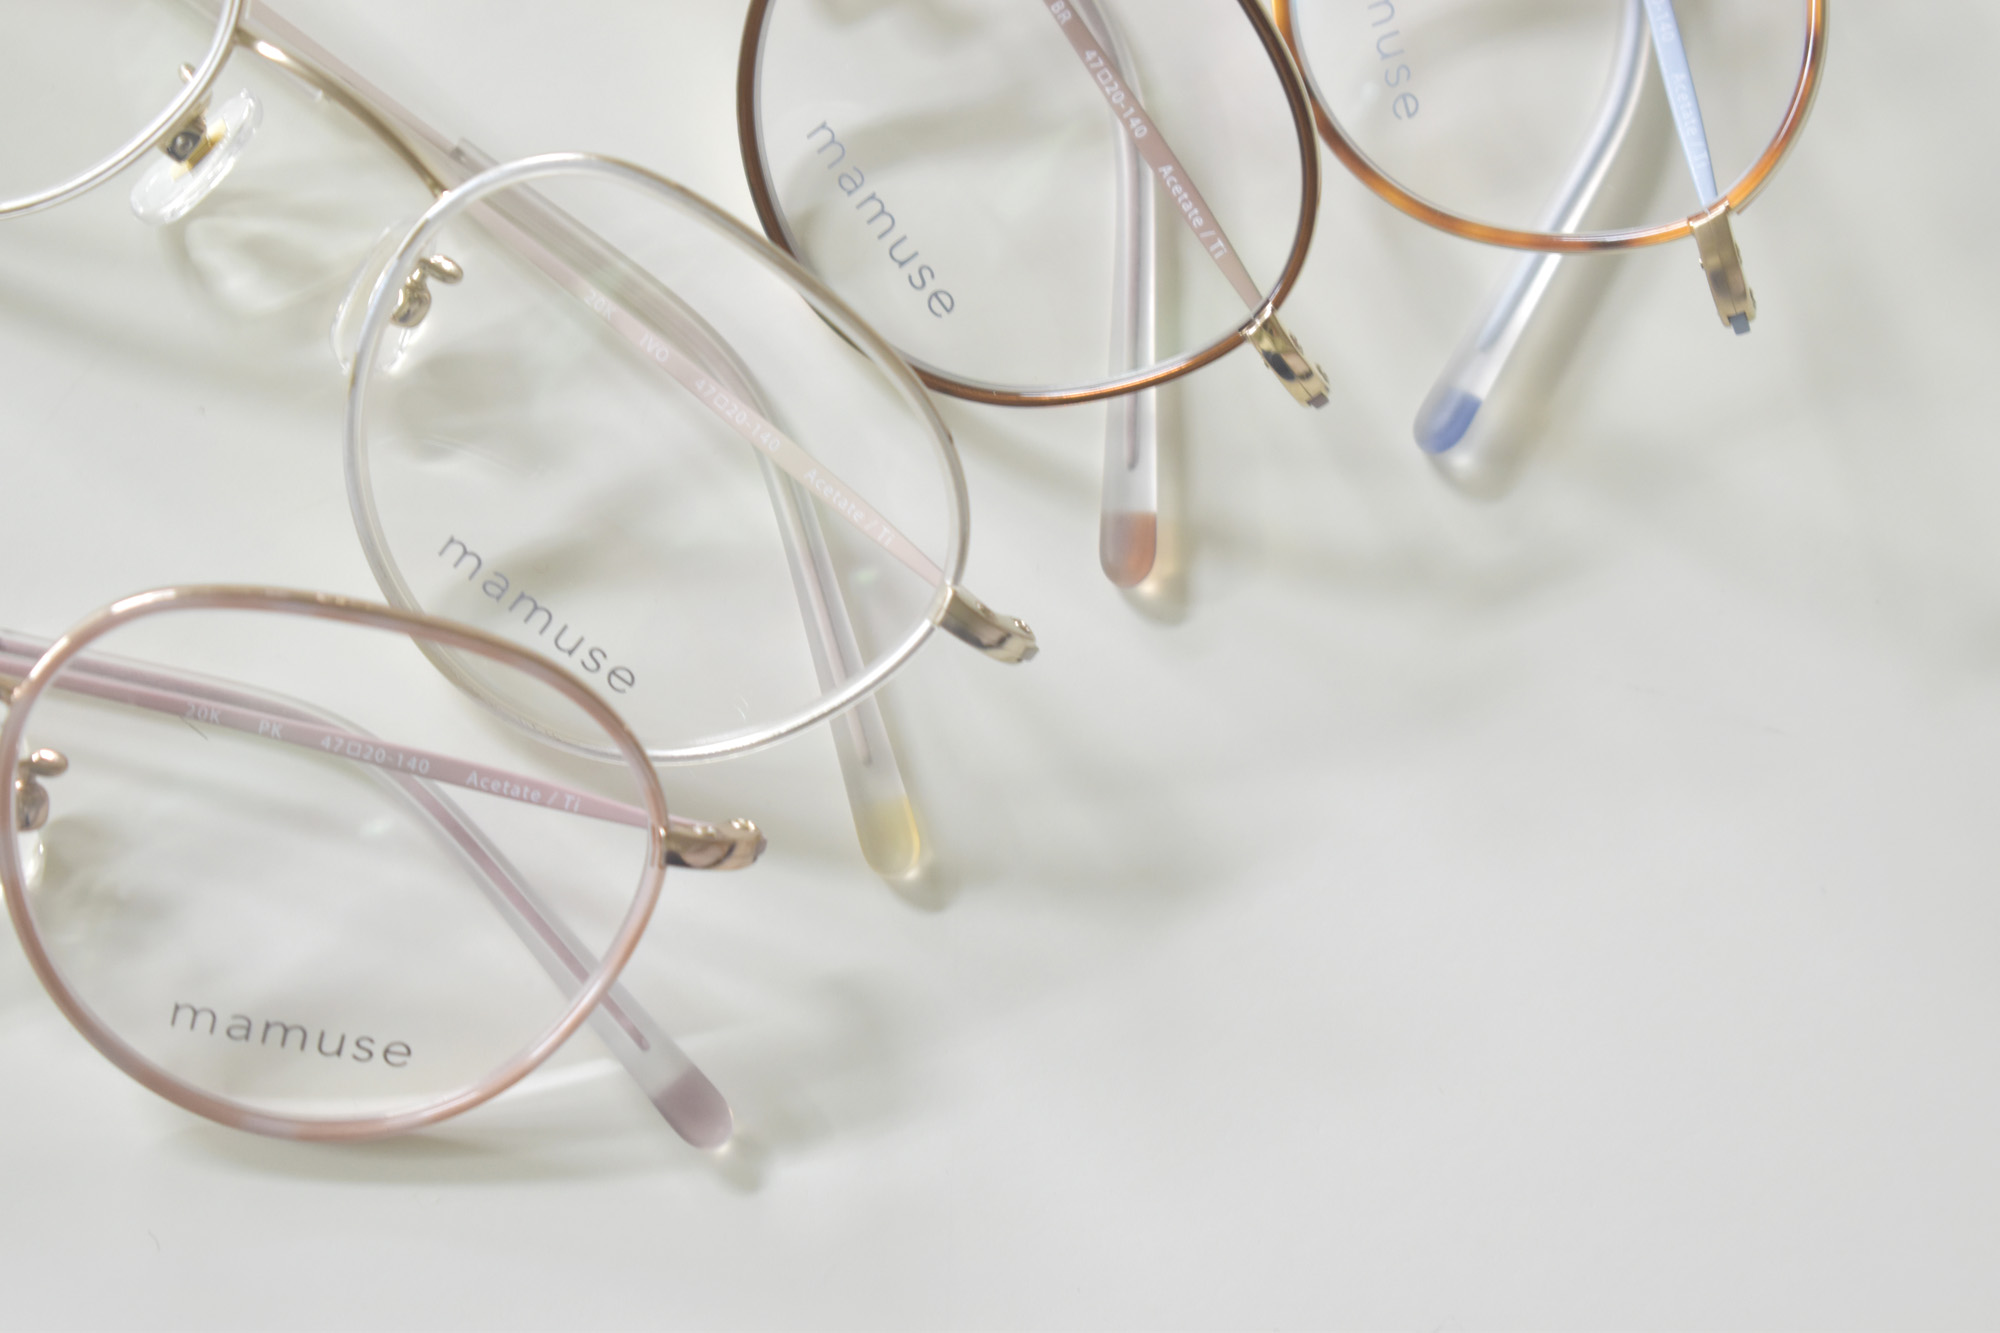 mamuseマミューズ / 都会的センスを持った大人の女性のために作り出された眼鏡 | 東京・表参道・青山にある”さばえ・ふくい産”の眼鏡